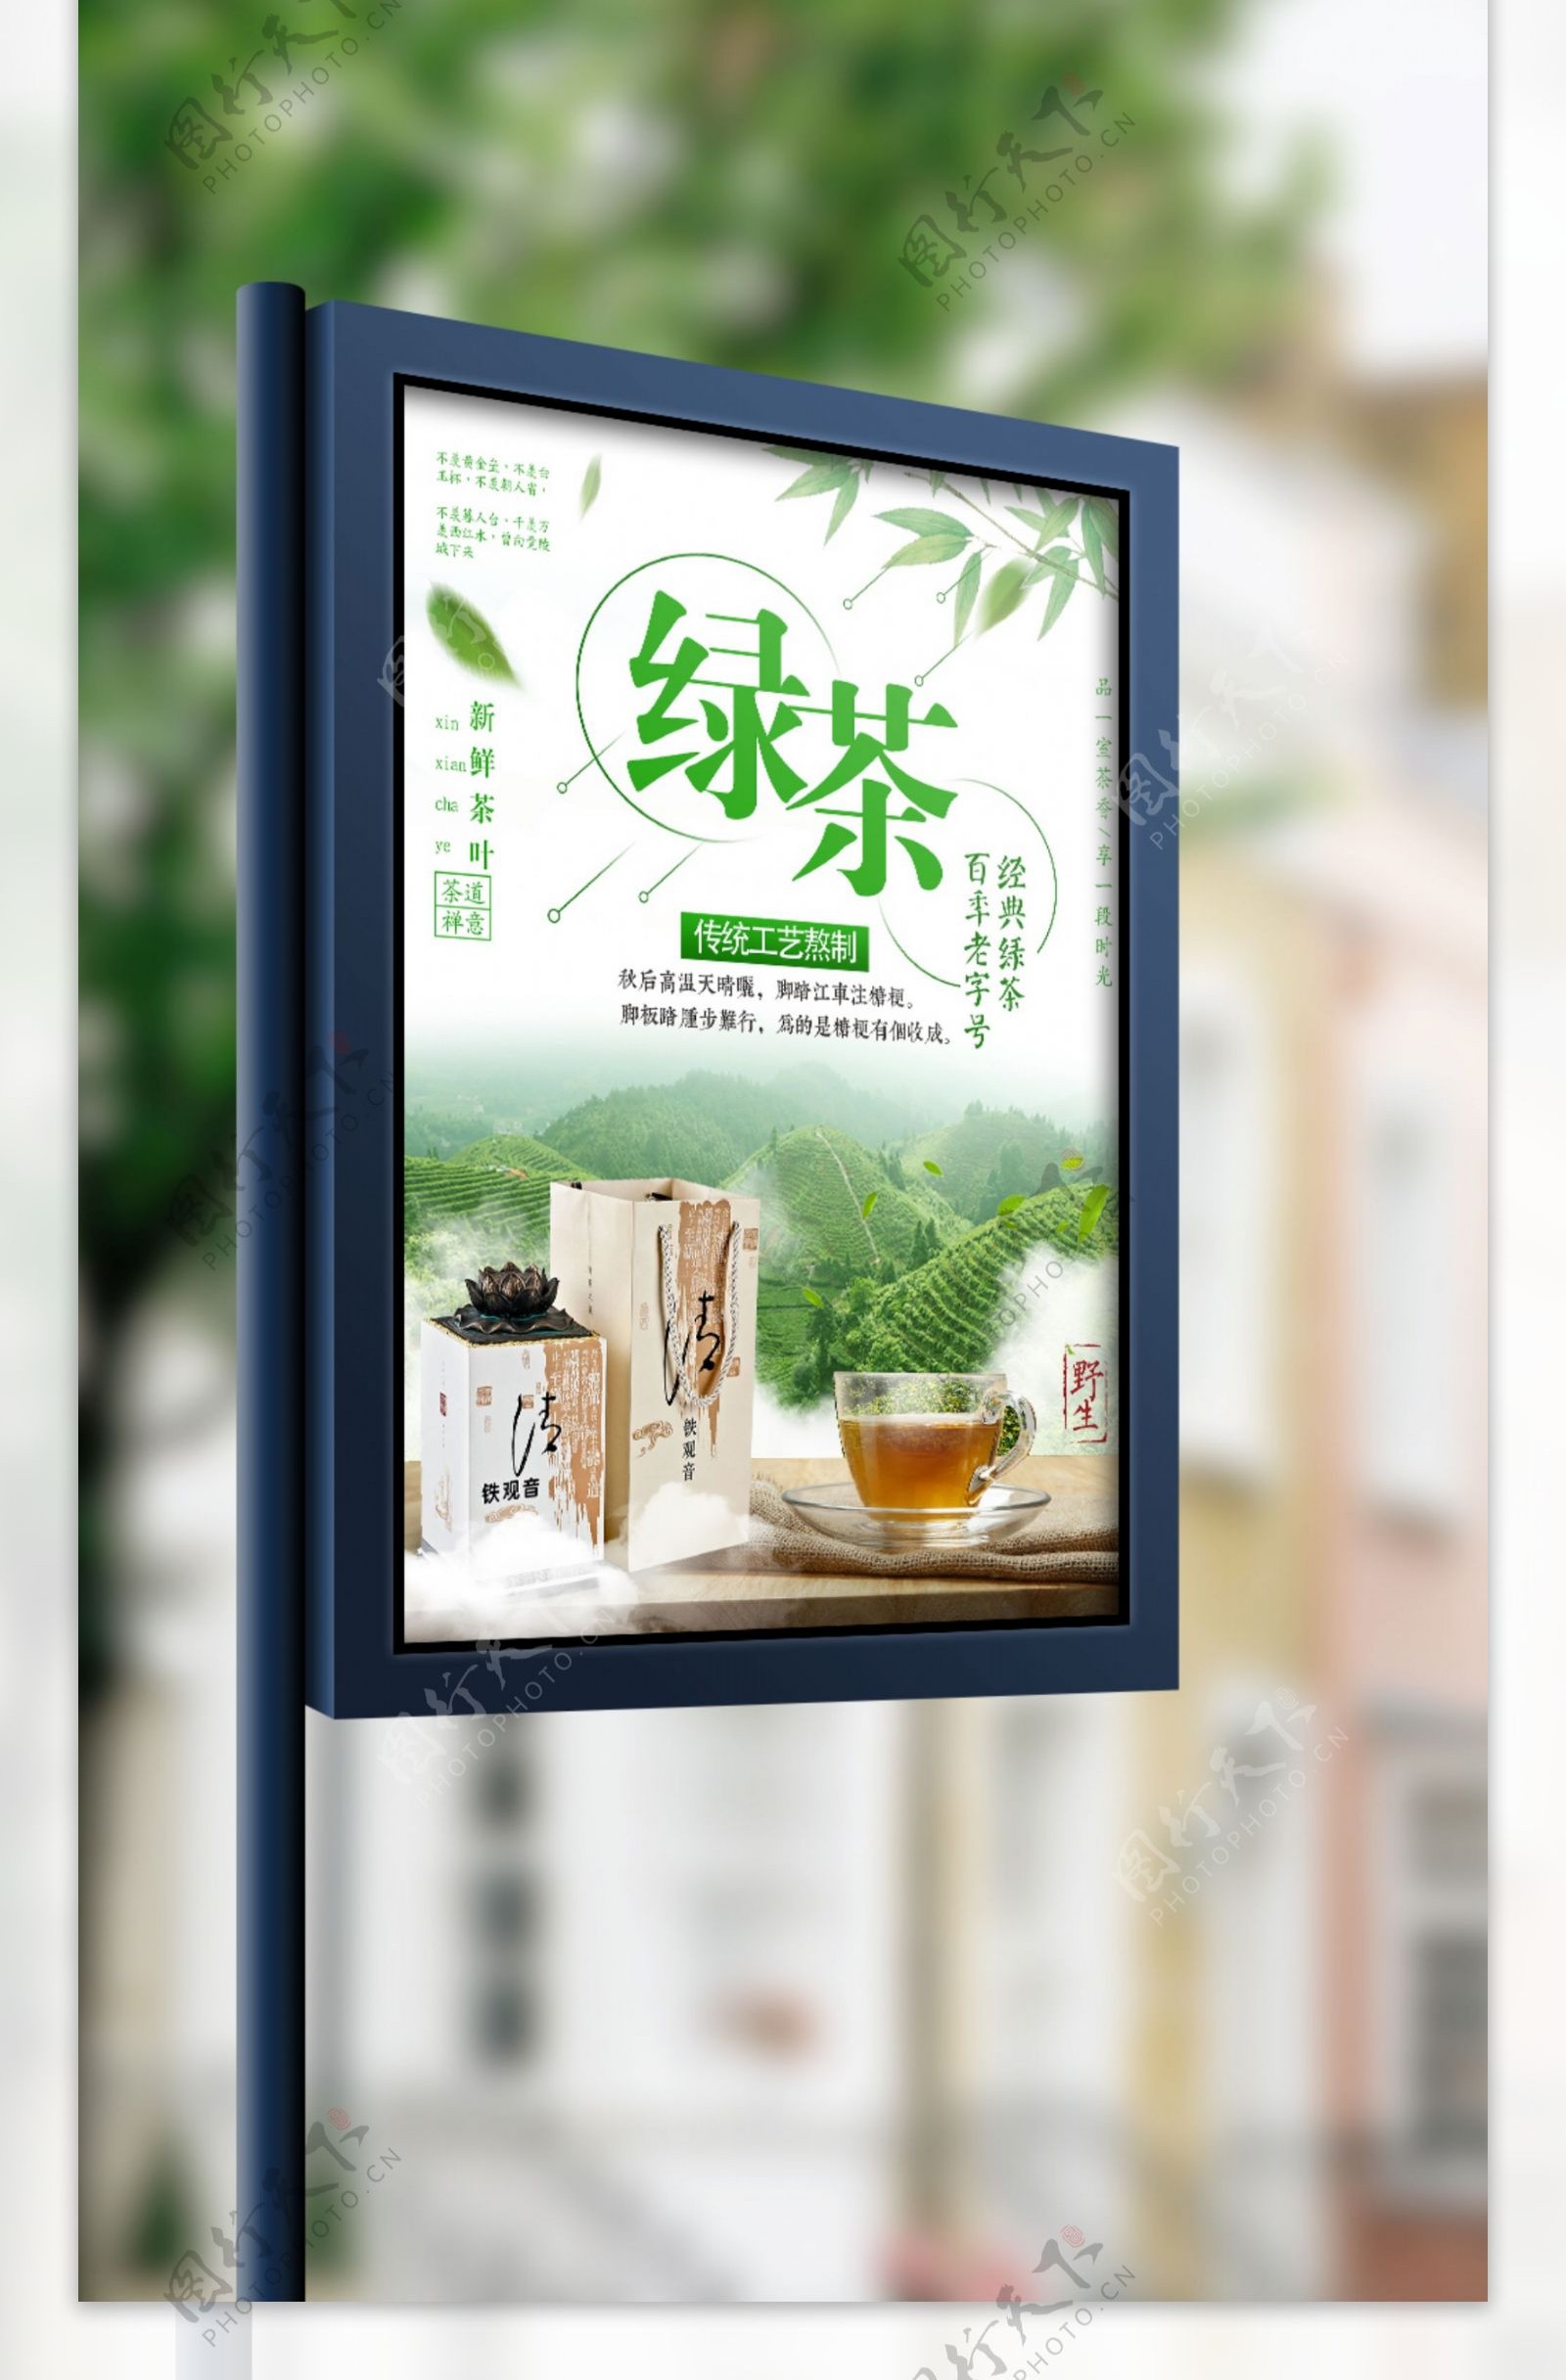 清新绿茶促销简约海报